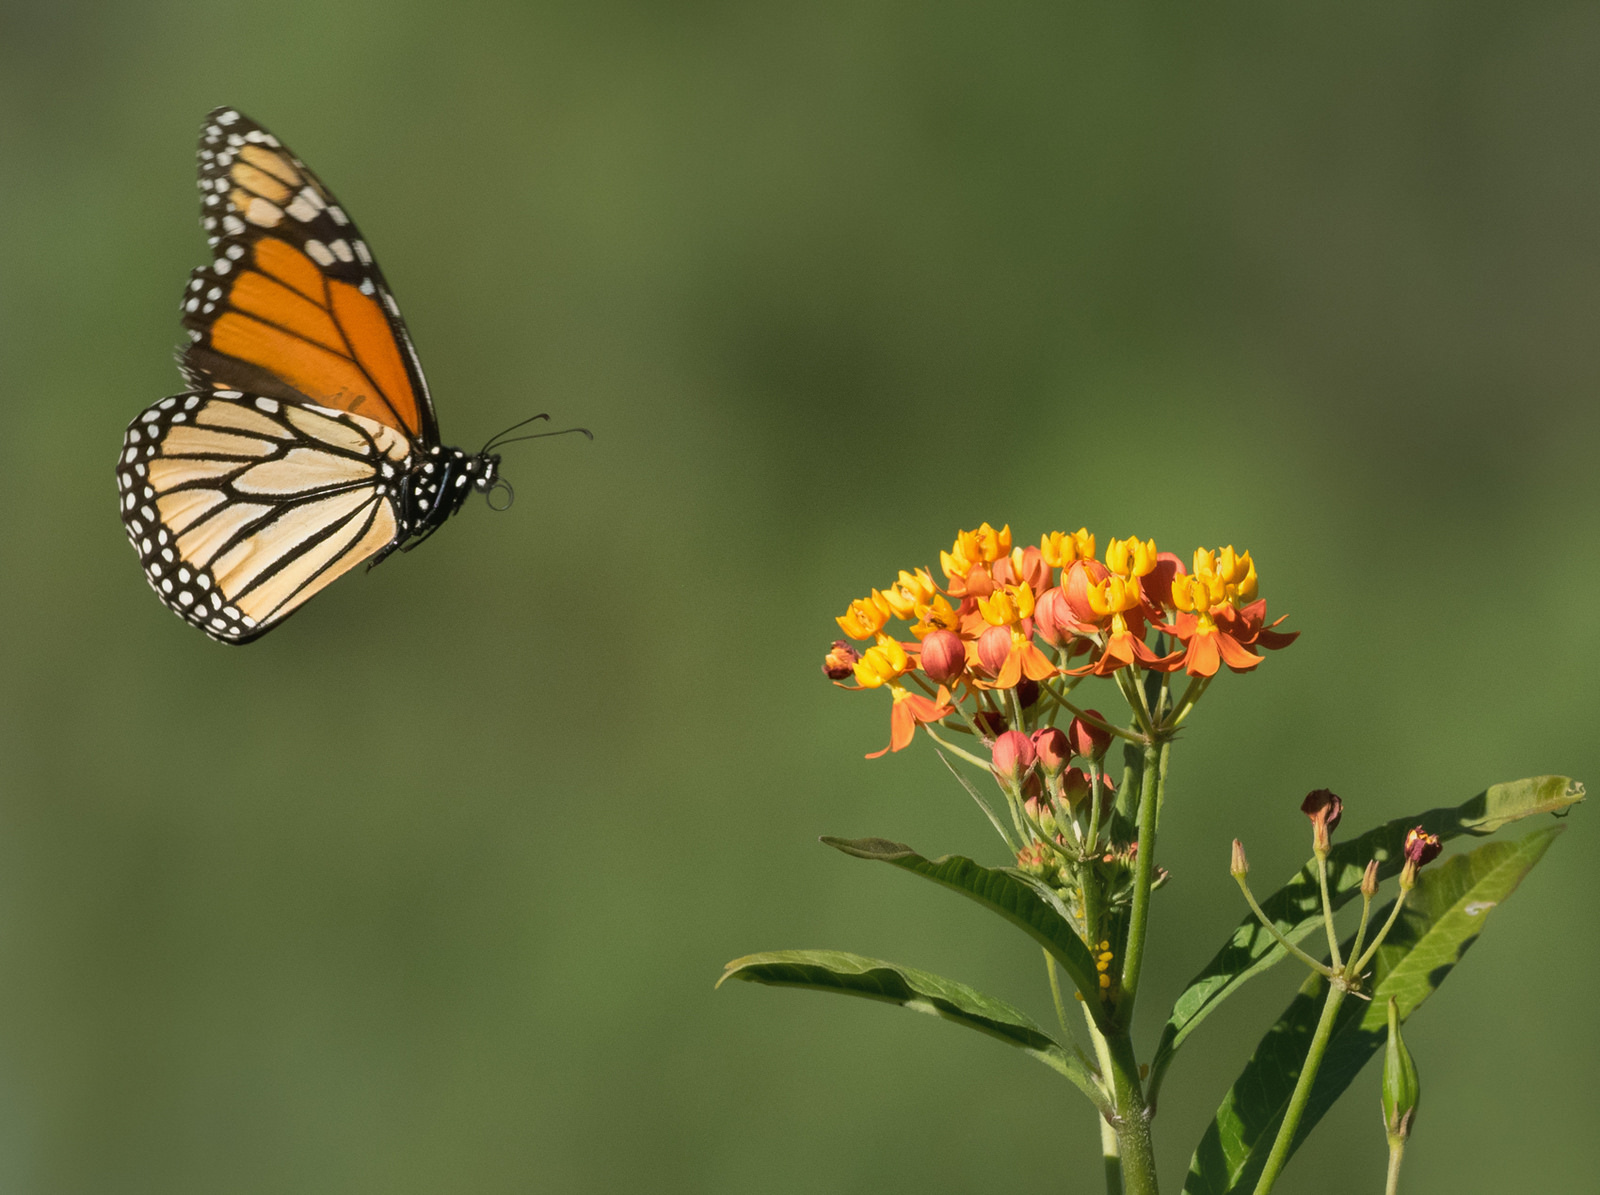 A monarch butterfly in flight